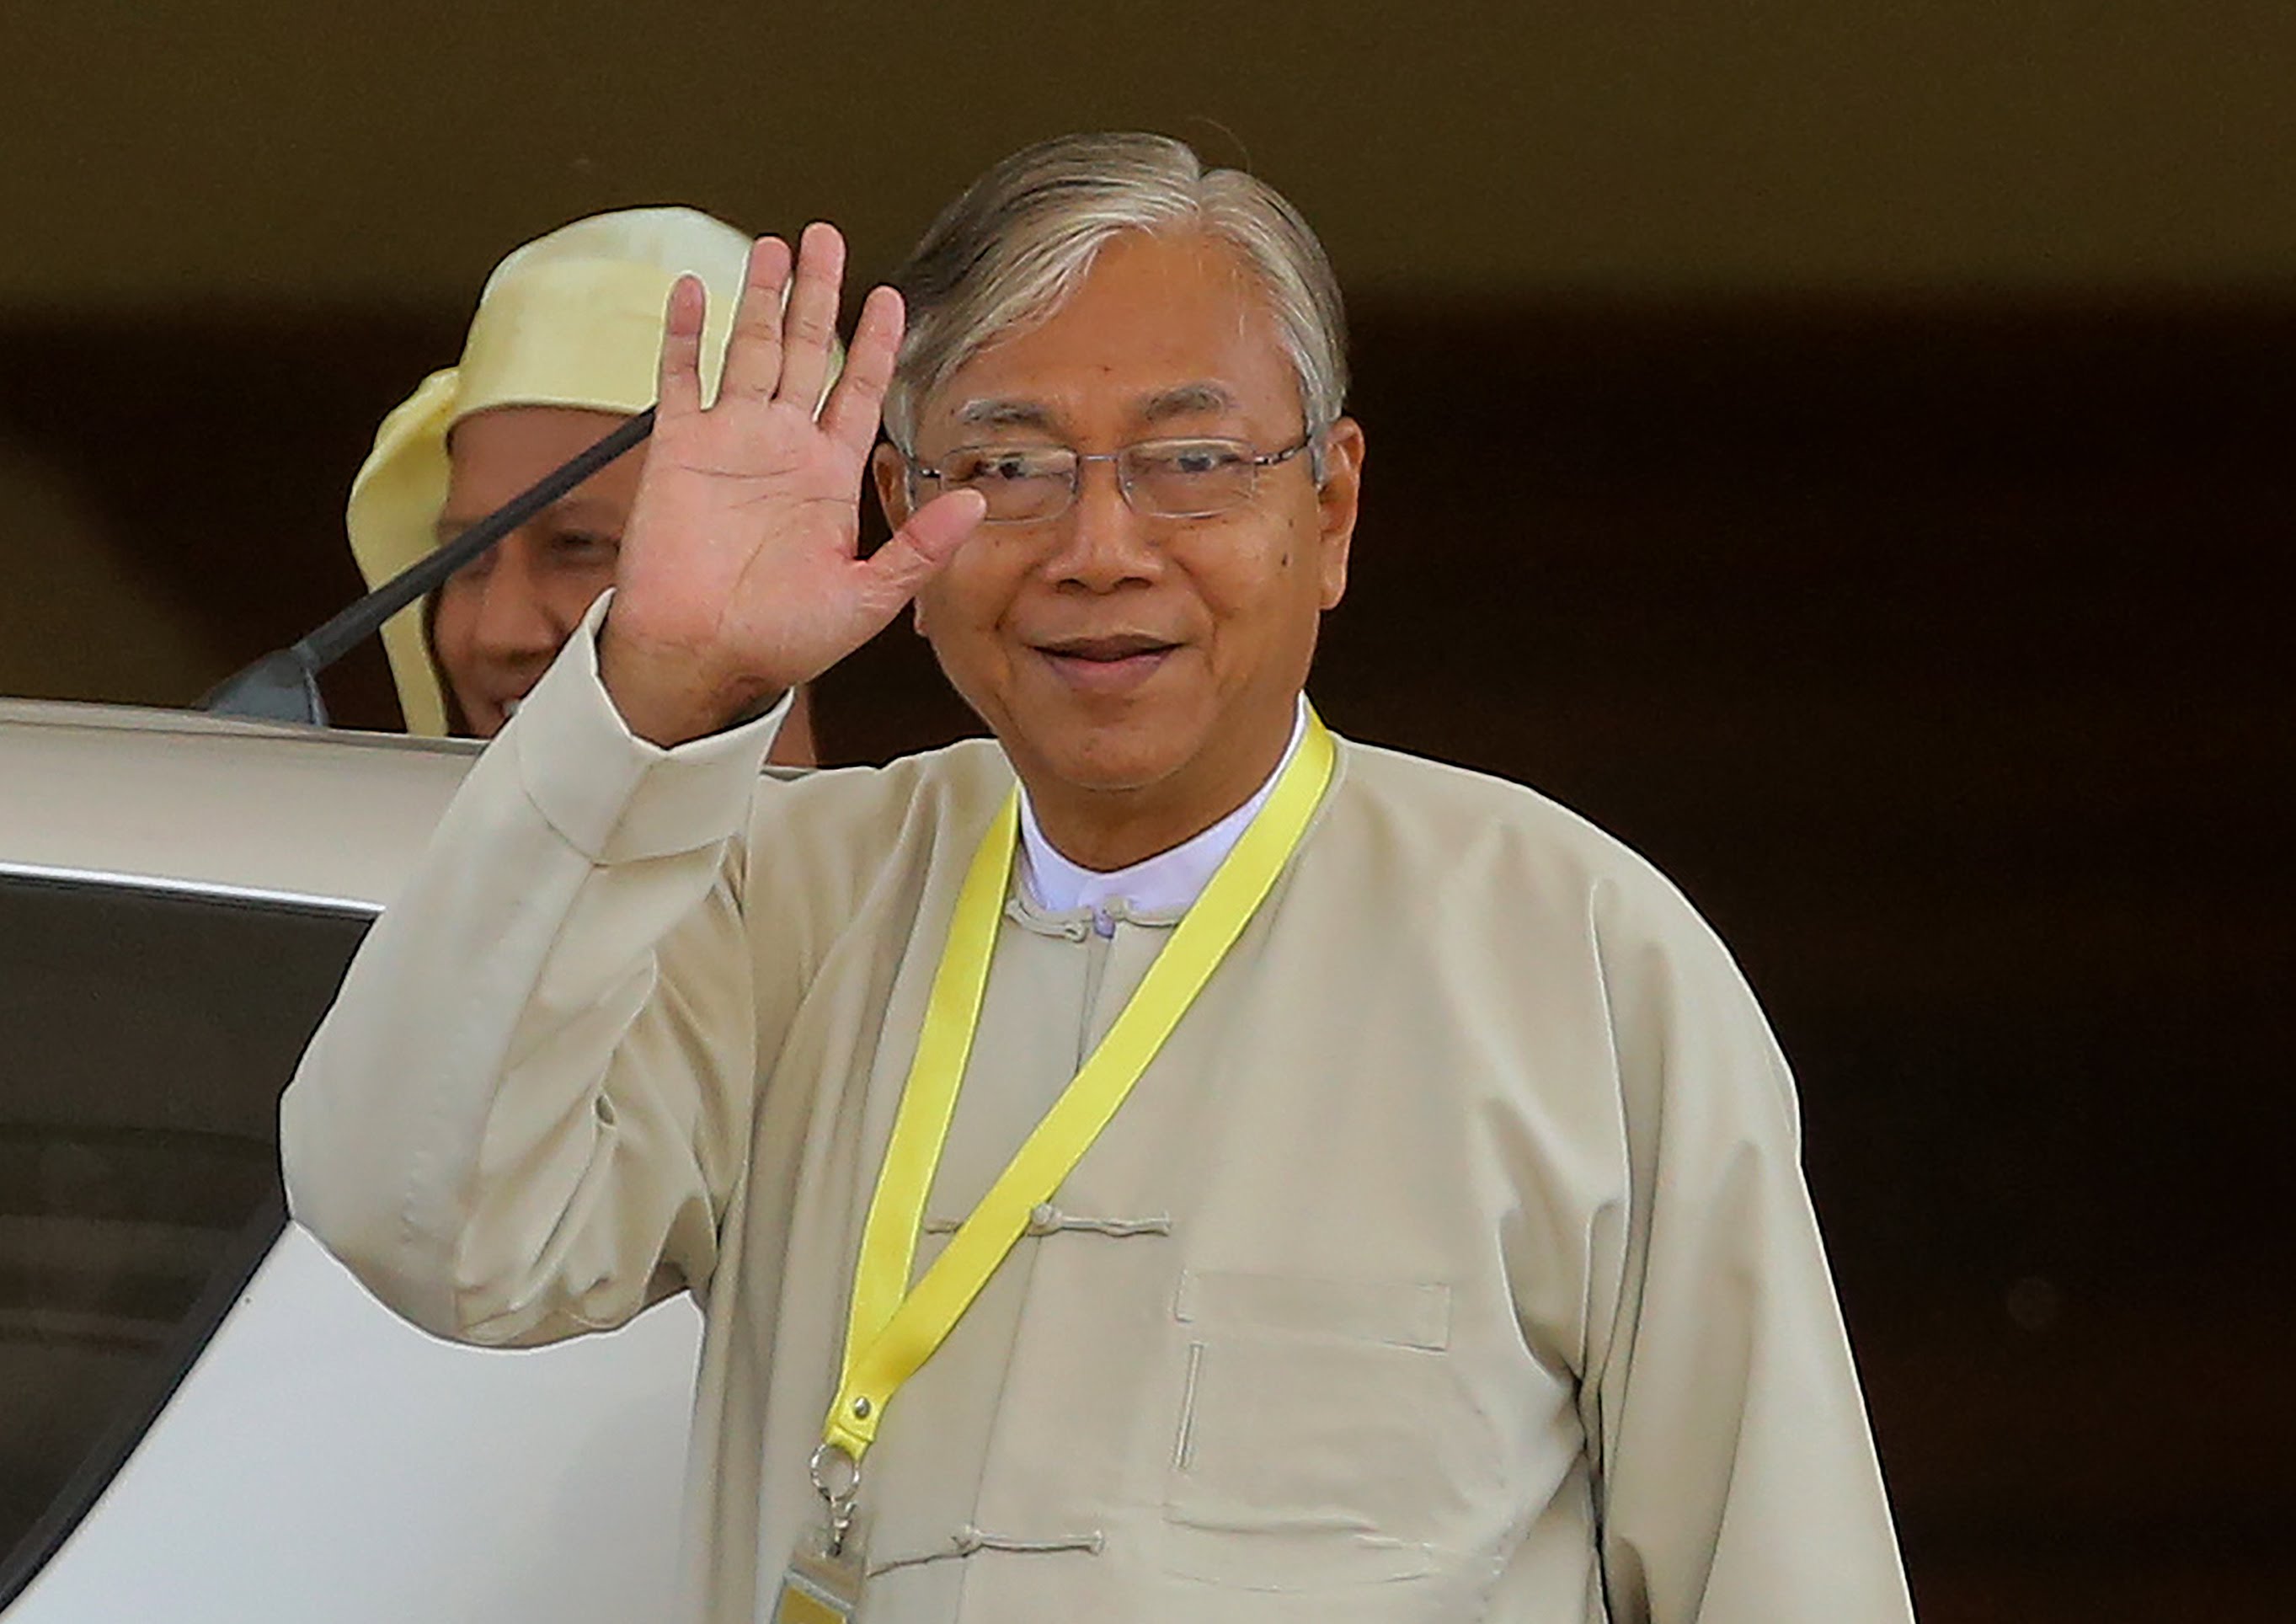 Htin Kyaw resigned as president of Myanmar effective immediately this morning,